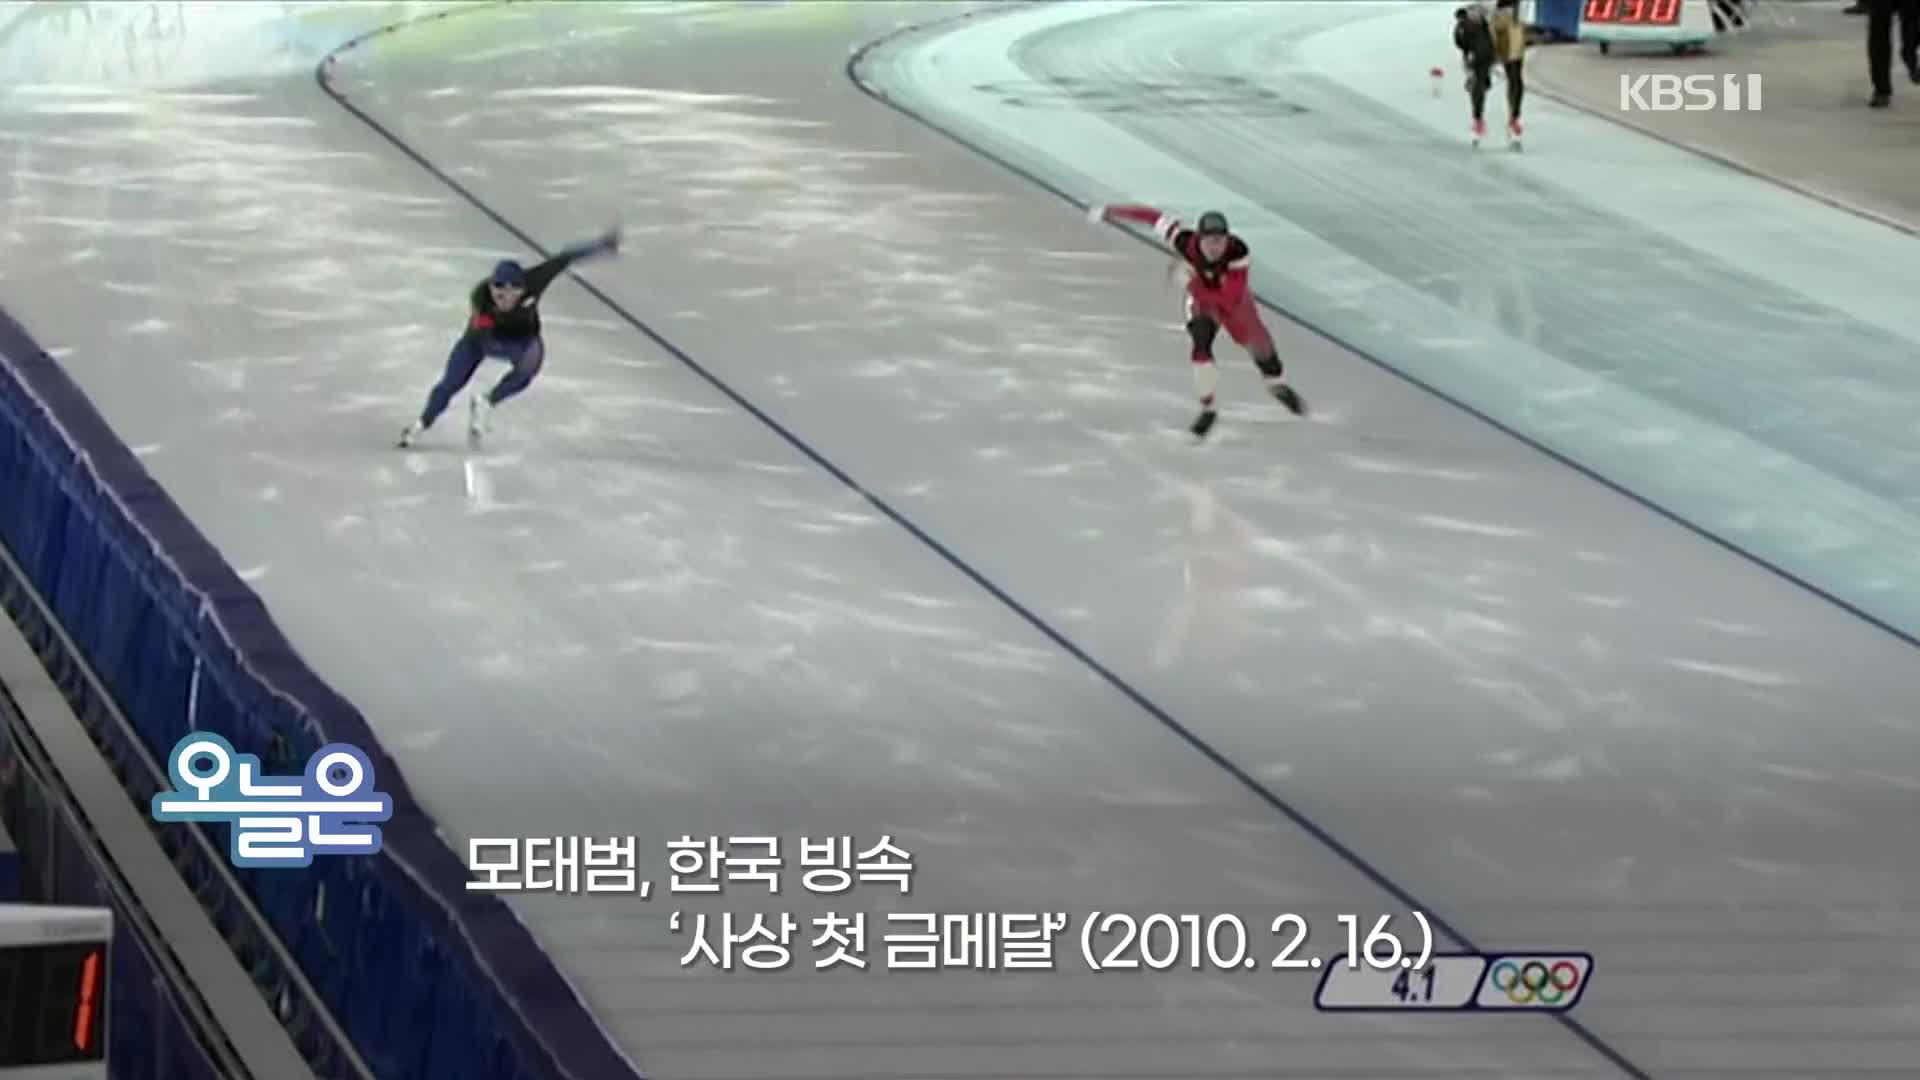 [오늘은] 모태범, 한국 빙속 ‘사상 첫 금메달’ (2010. 2. 16.)